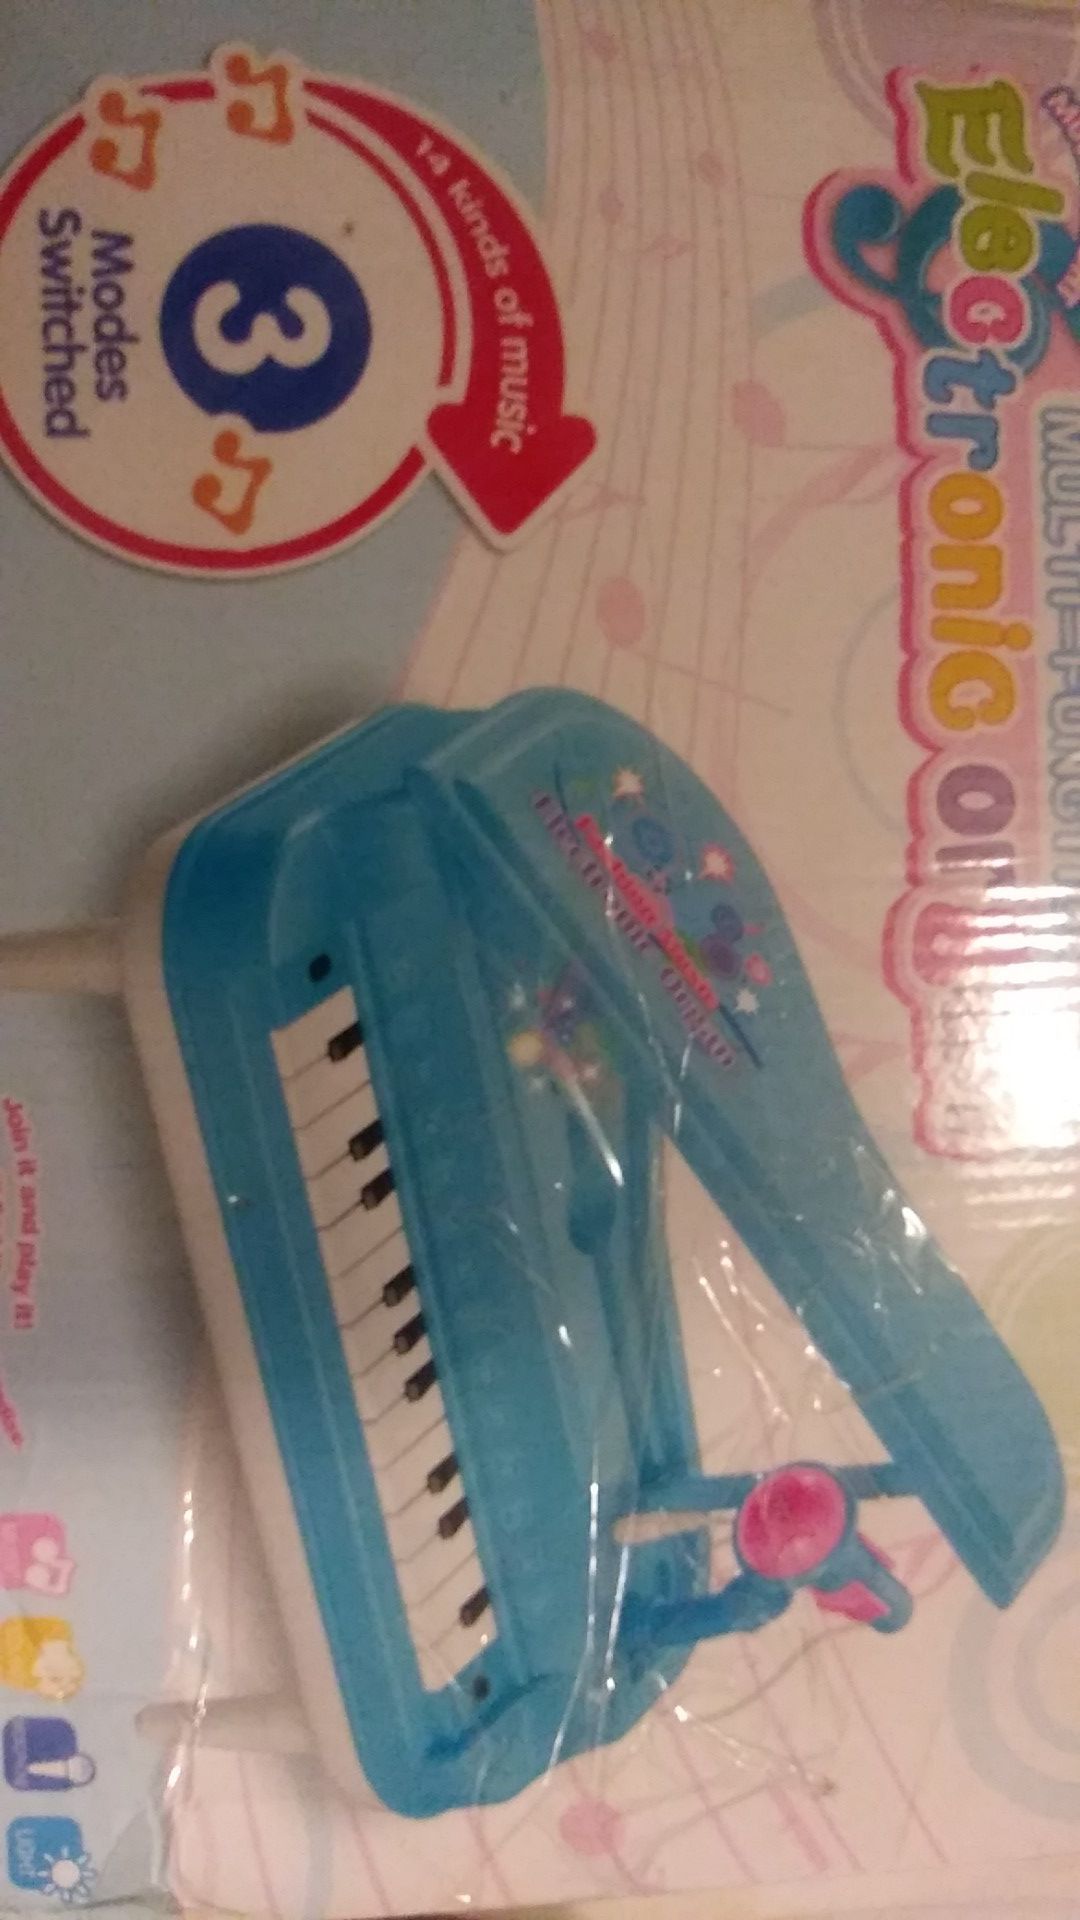 Electronic organ kids toys